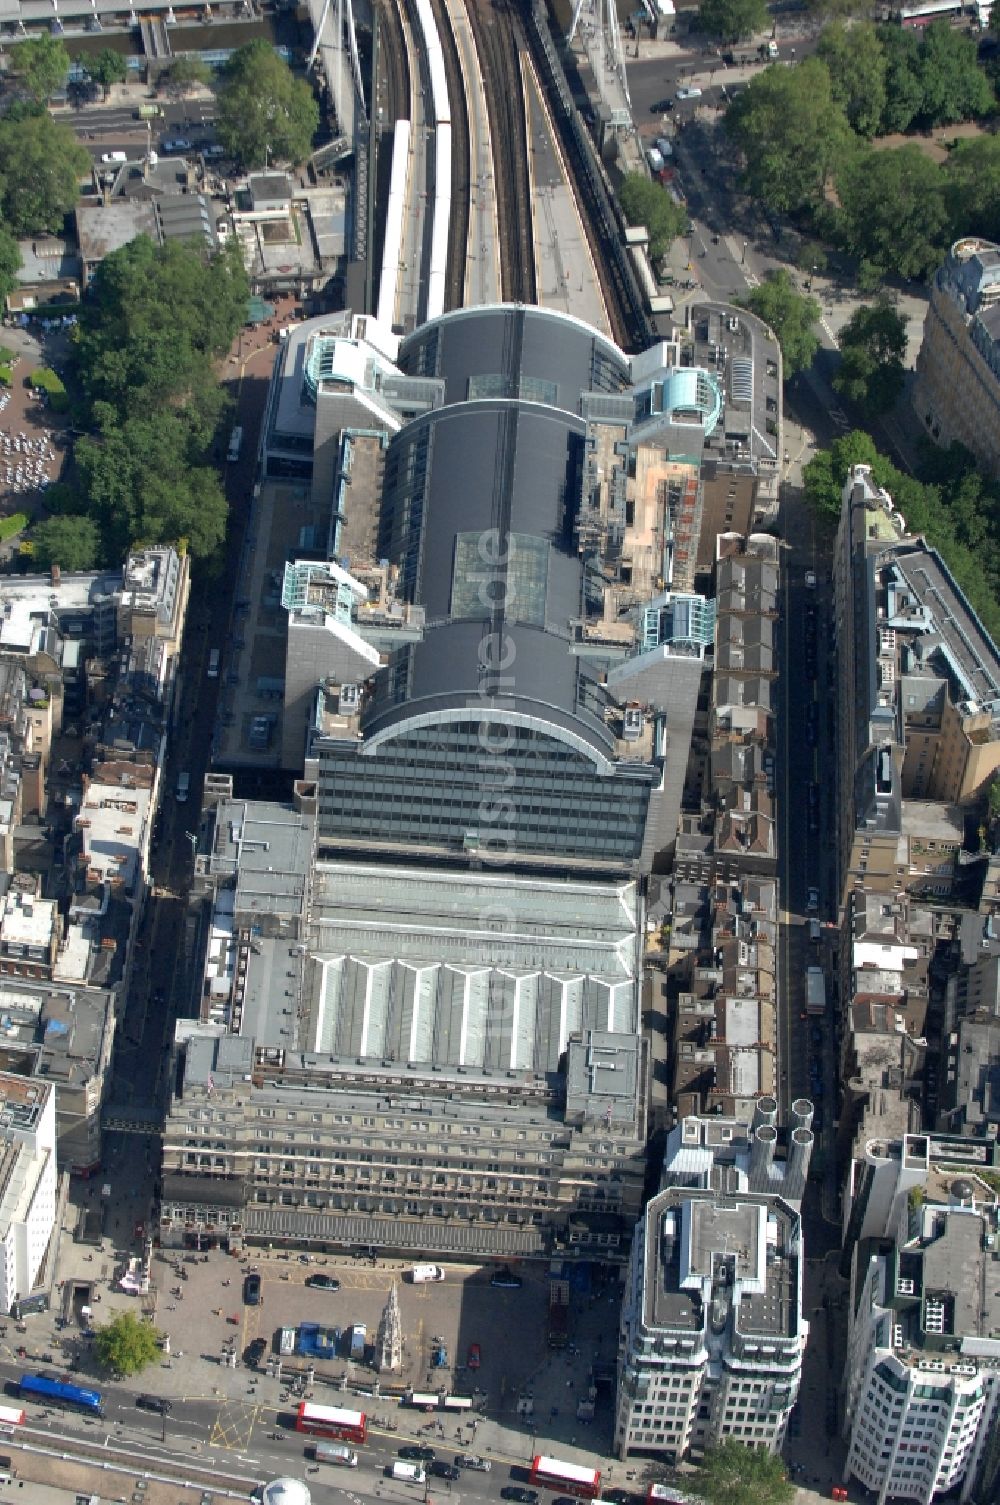 Luftbild London - Bahnhofsgebäude Charing Cross in London